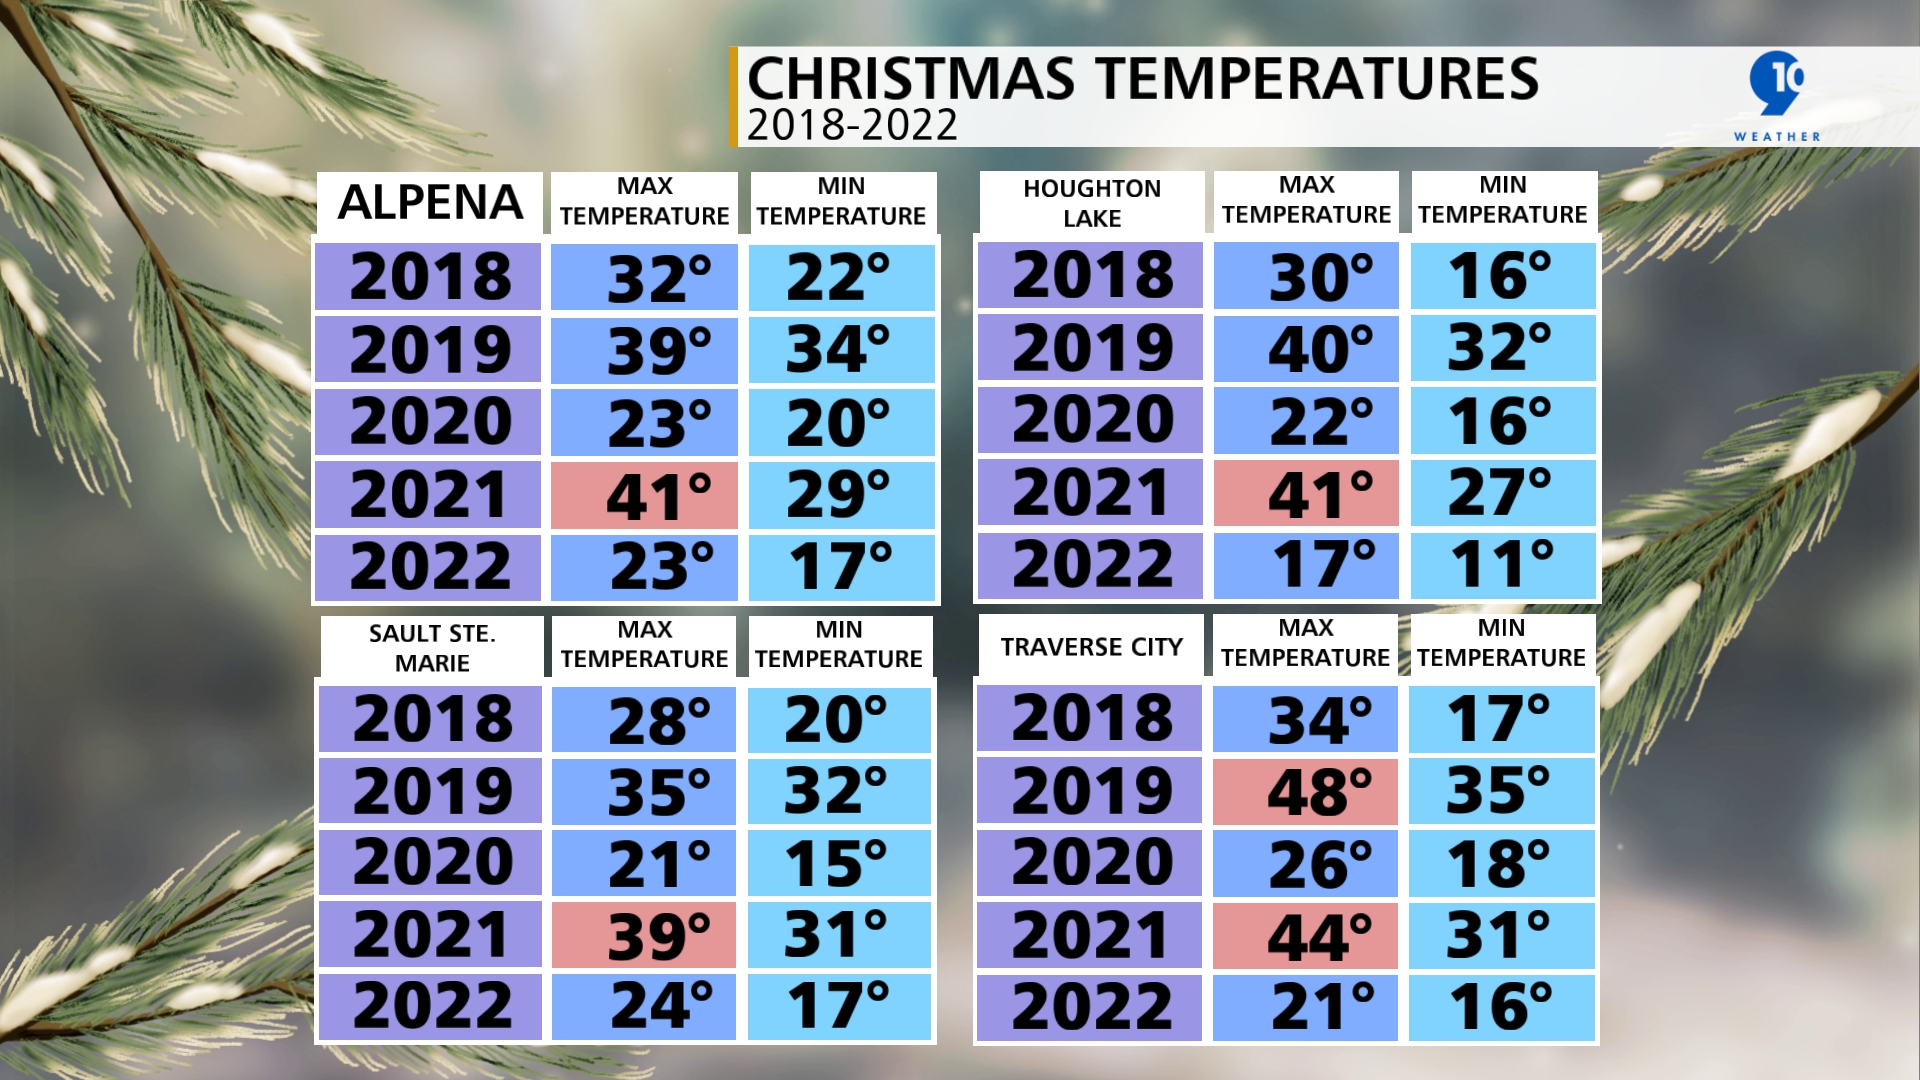 Maximum and Minimum Temperatures on December 25th 2018-2022